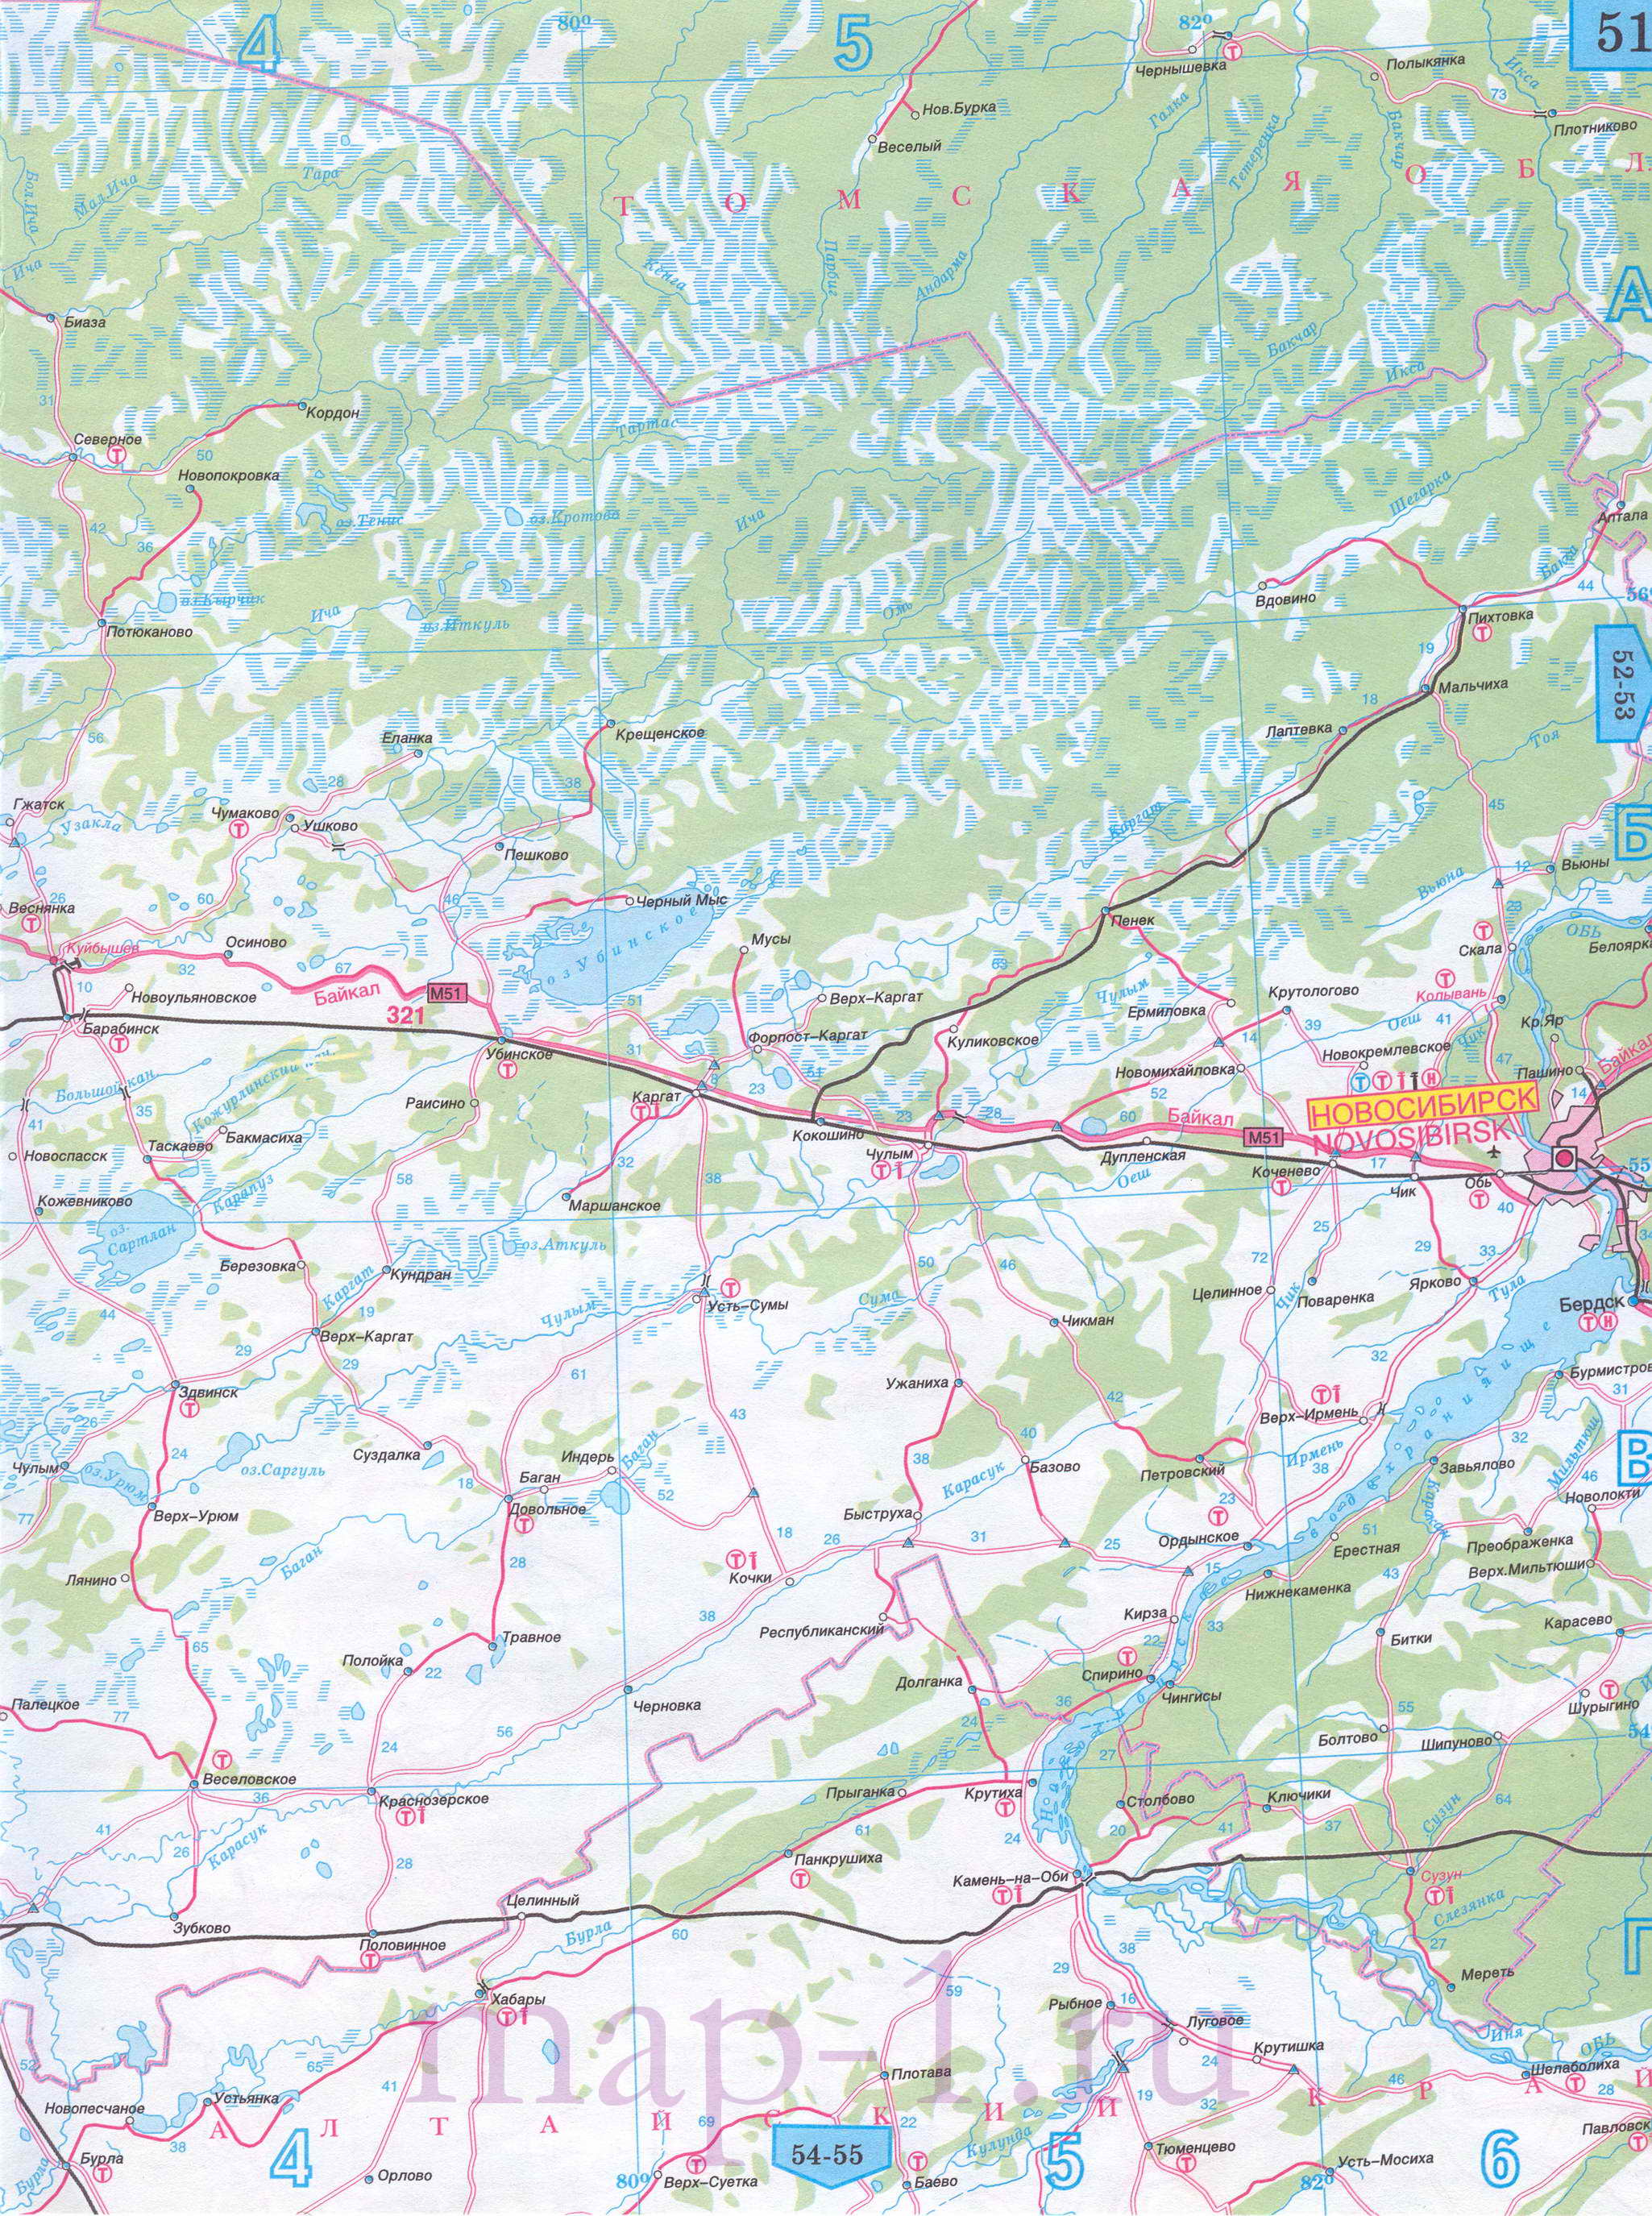 Карта Омской области автомобильная. Омская область - подробная карта автомобильных дорог масштаба 1см:15км, D0 - 